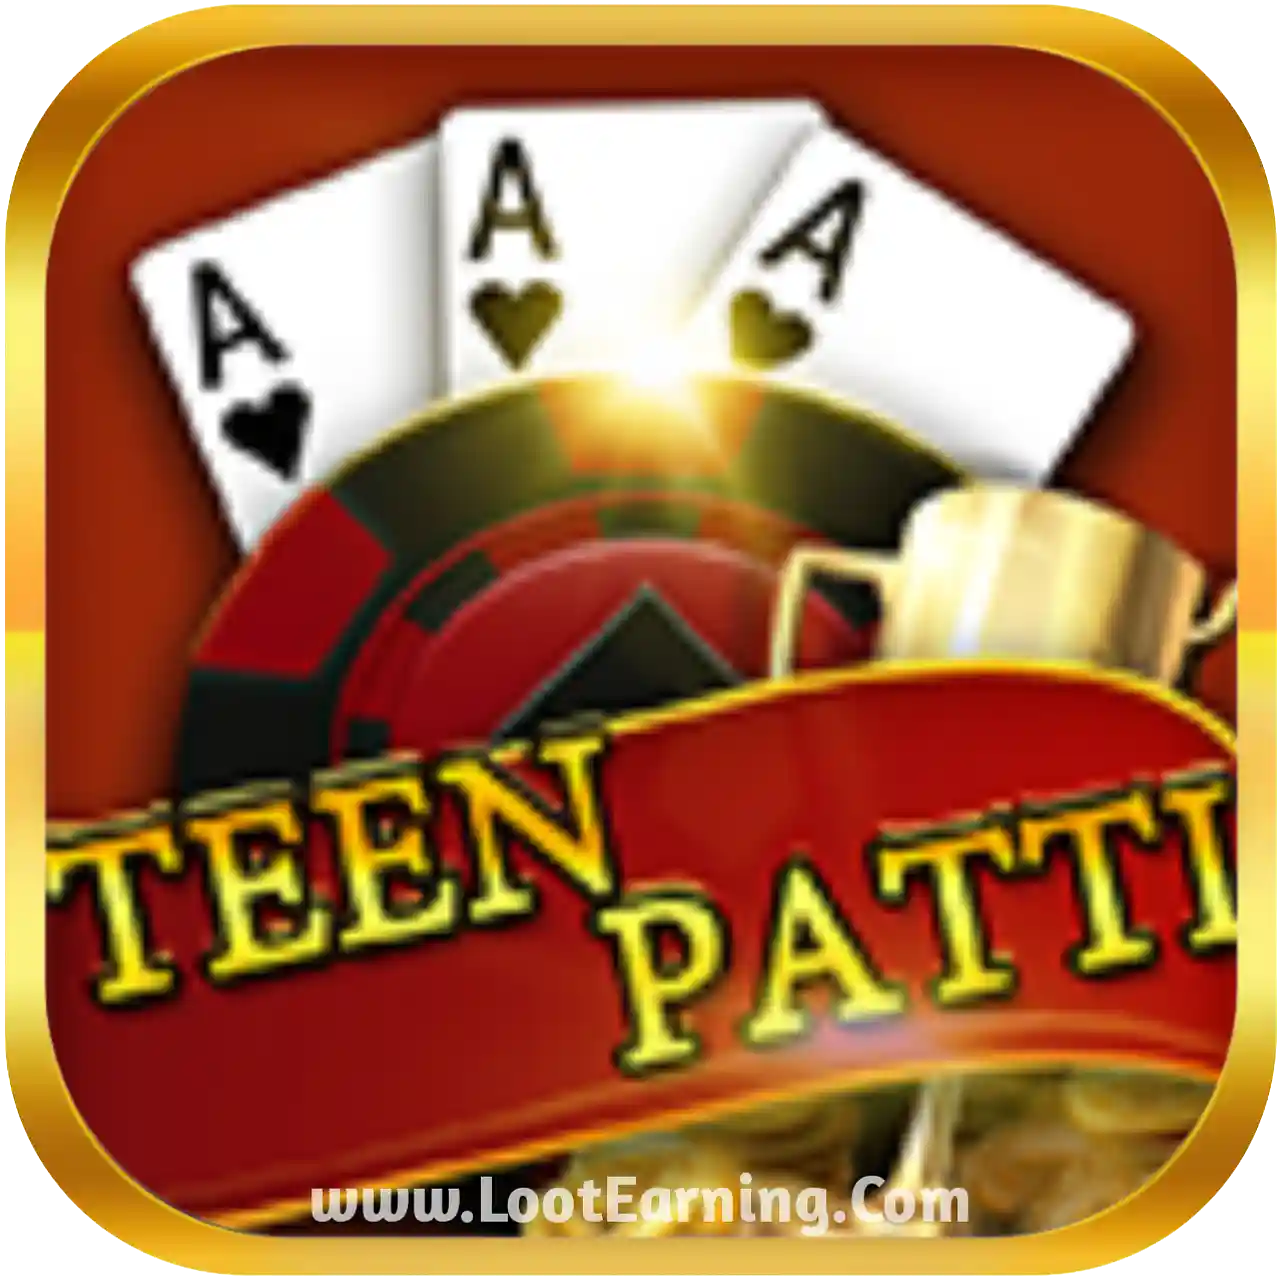 Meta Teen Patti Logo